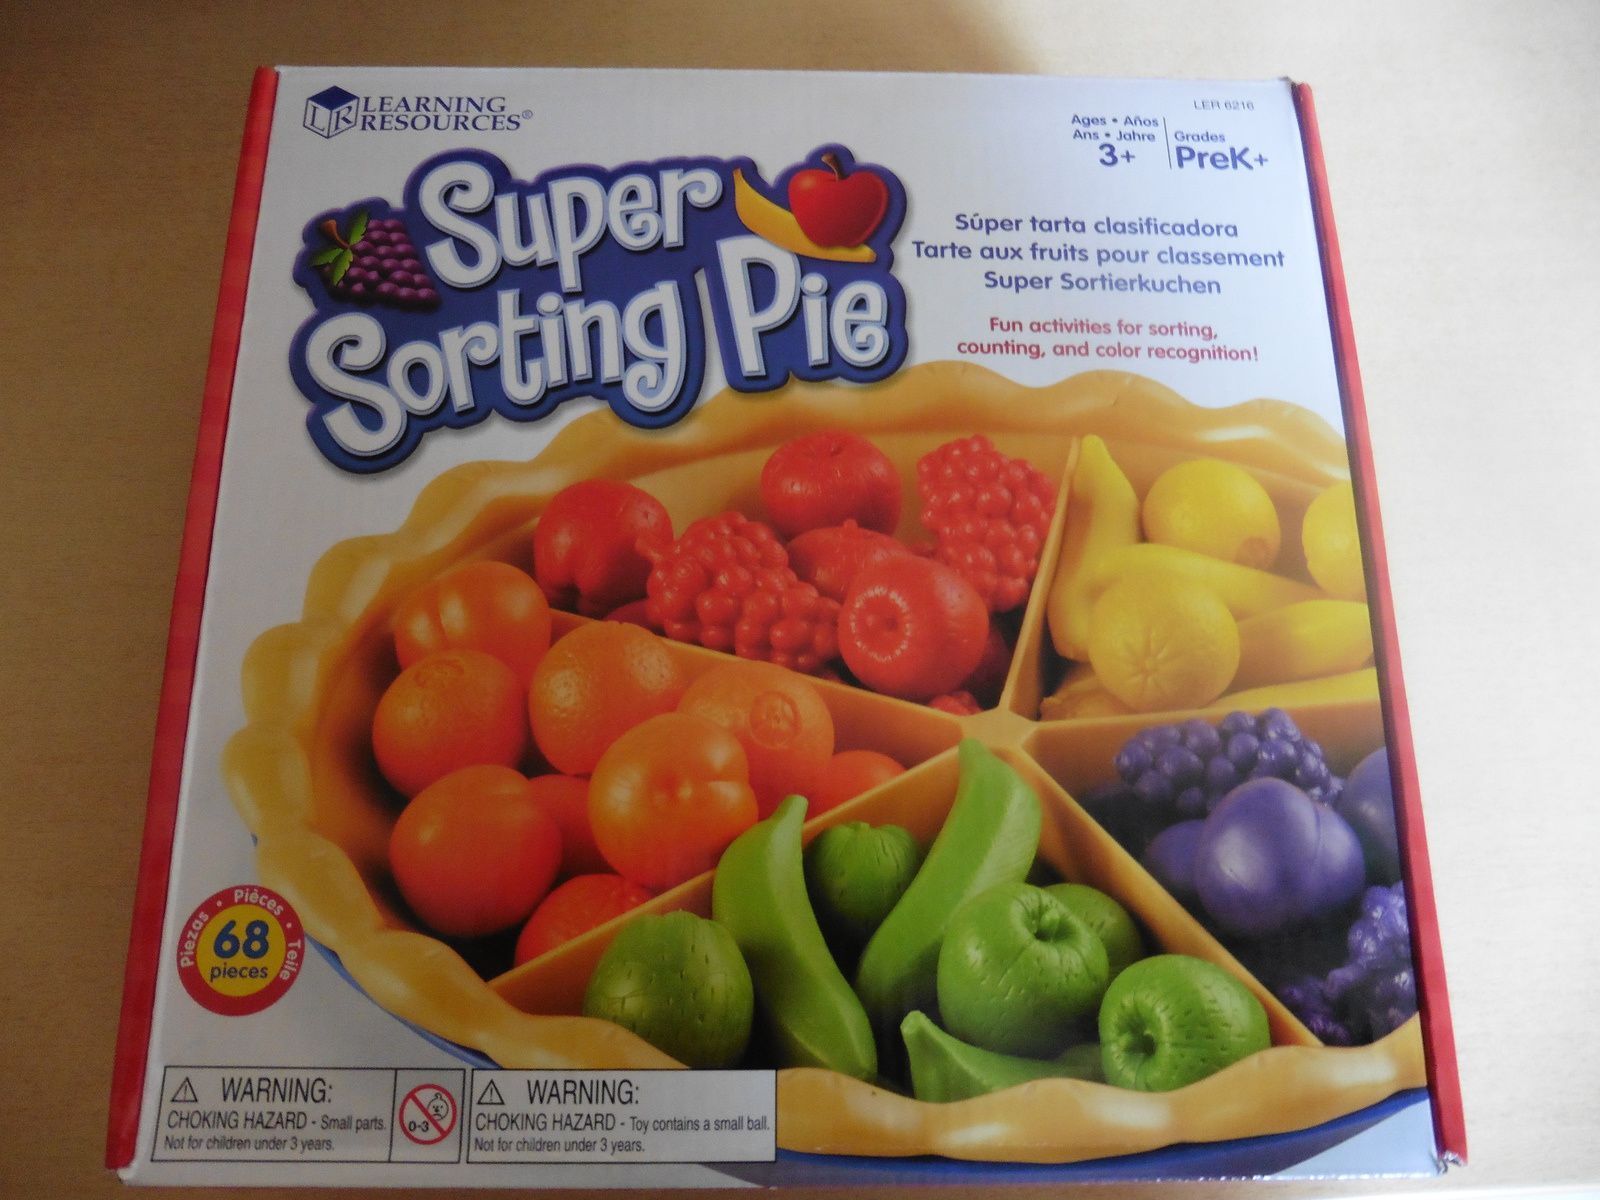 Super Sorting Pie autrement dit " Tarte aux fruits pour classement "